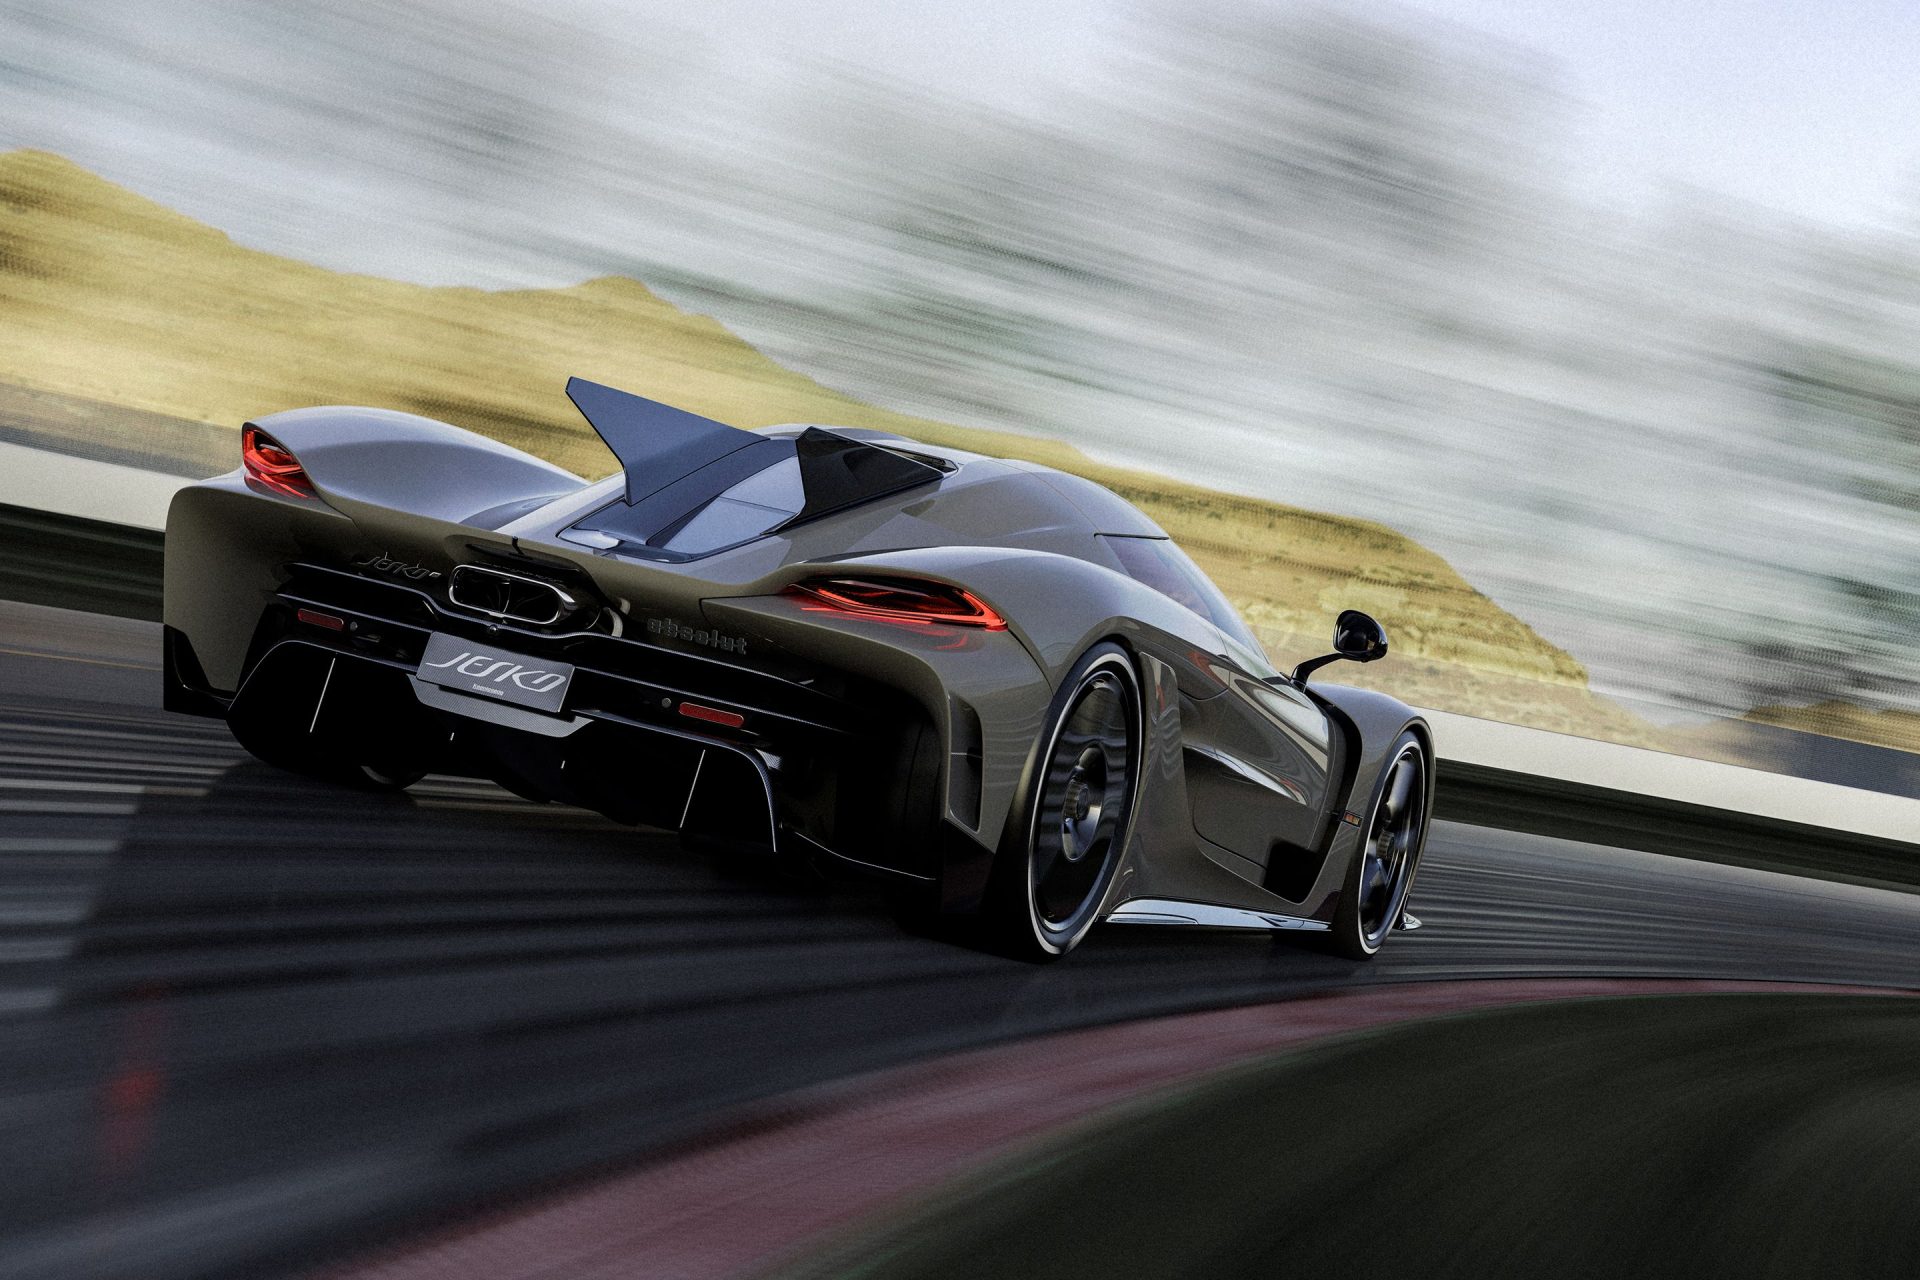 Fastest Cars in World: ये है दुनिया की सबसे तेज रफ्तार कार, टॉप स्पीड सुनकर रह जाएंगे हैरान